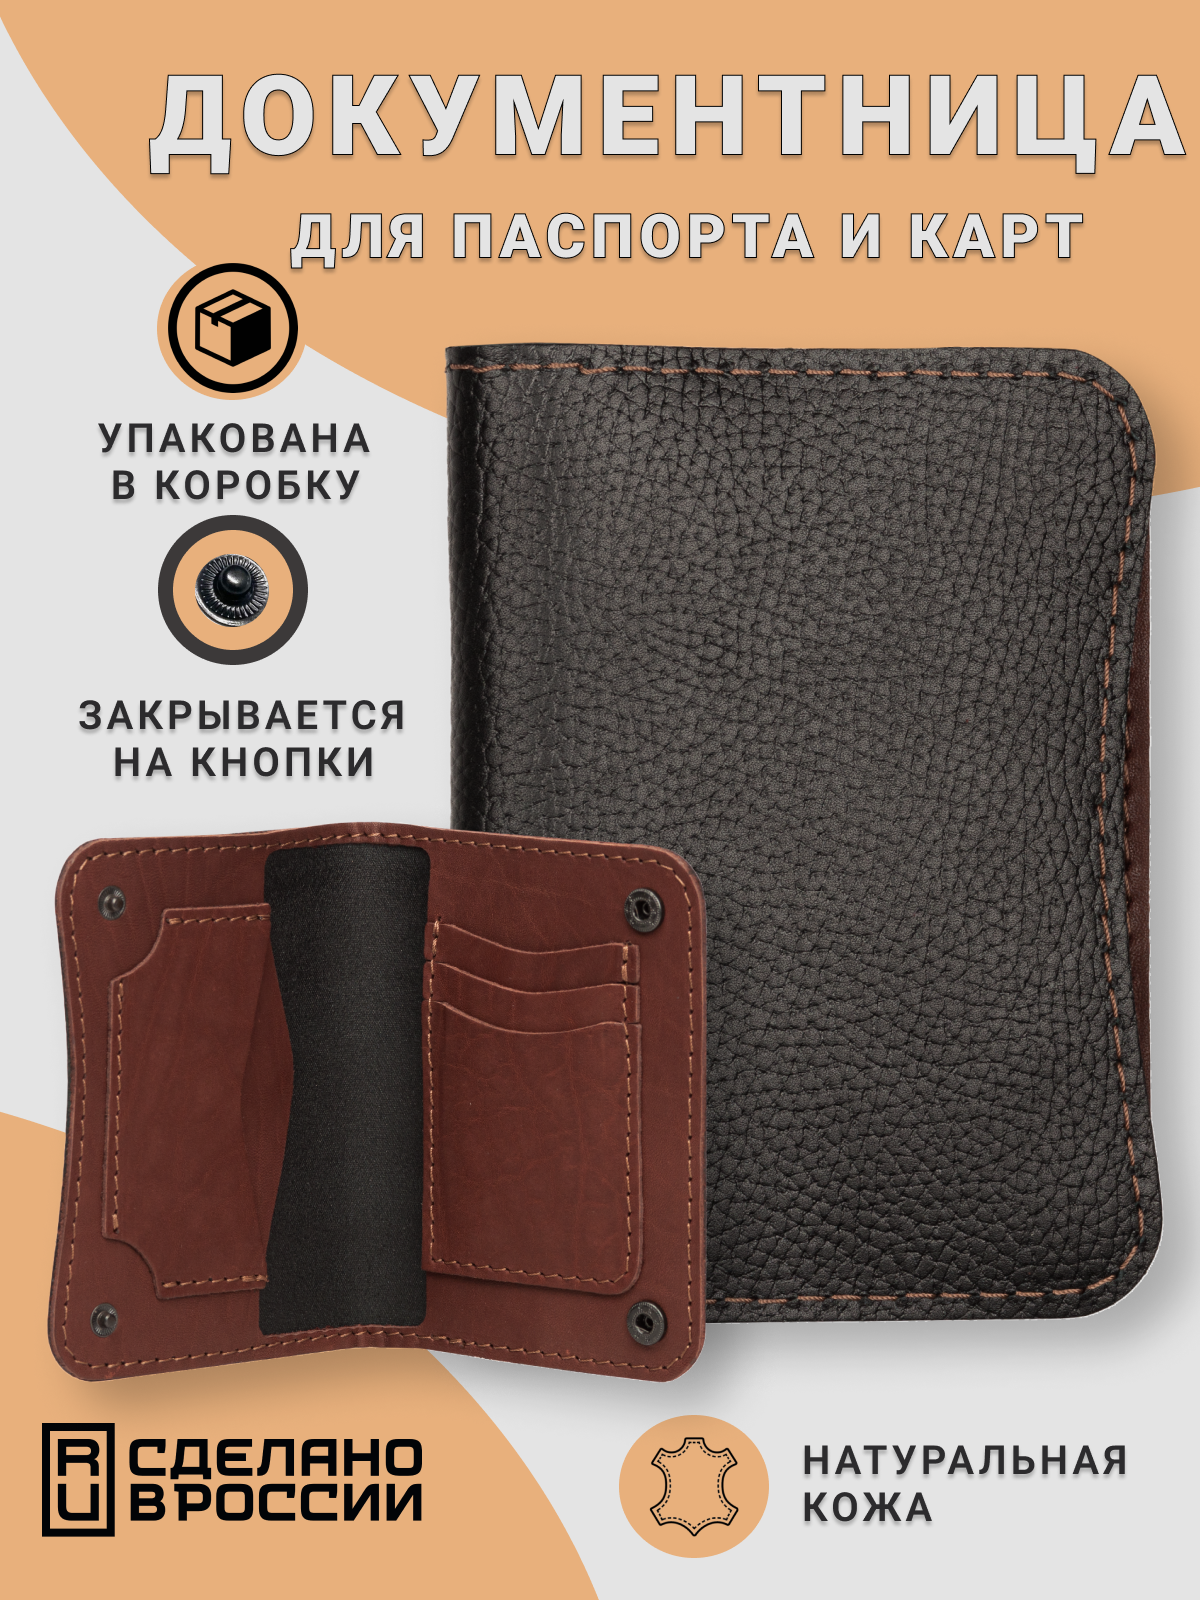 Документница для паспорта кожZавод Кожаная обложка для паспорта и документов чёрного цвета с коричневыми элементами